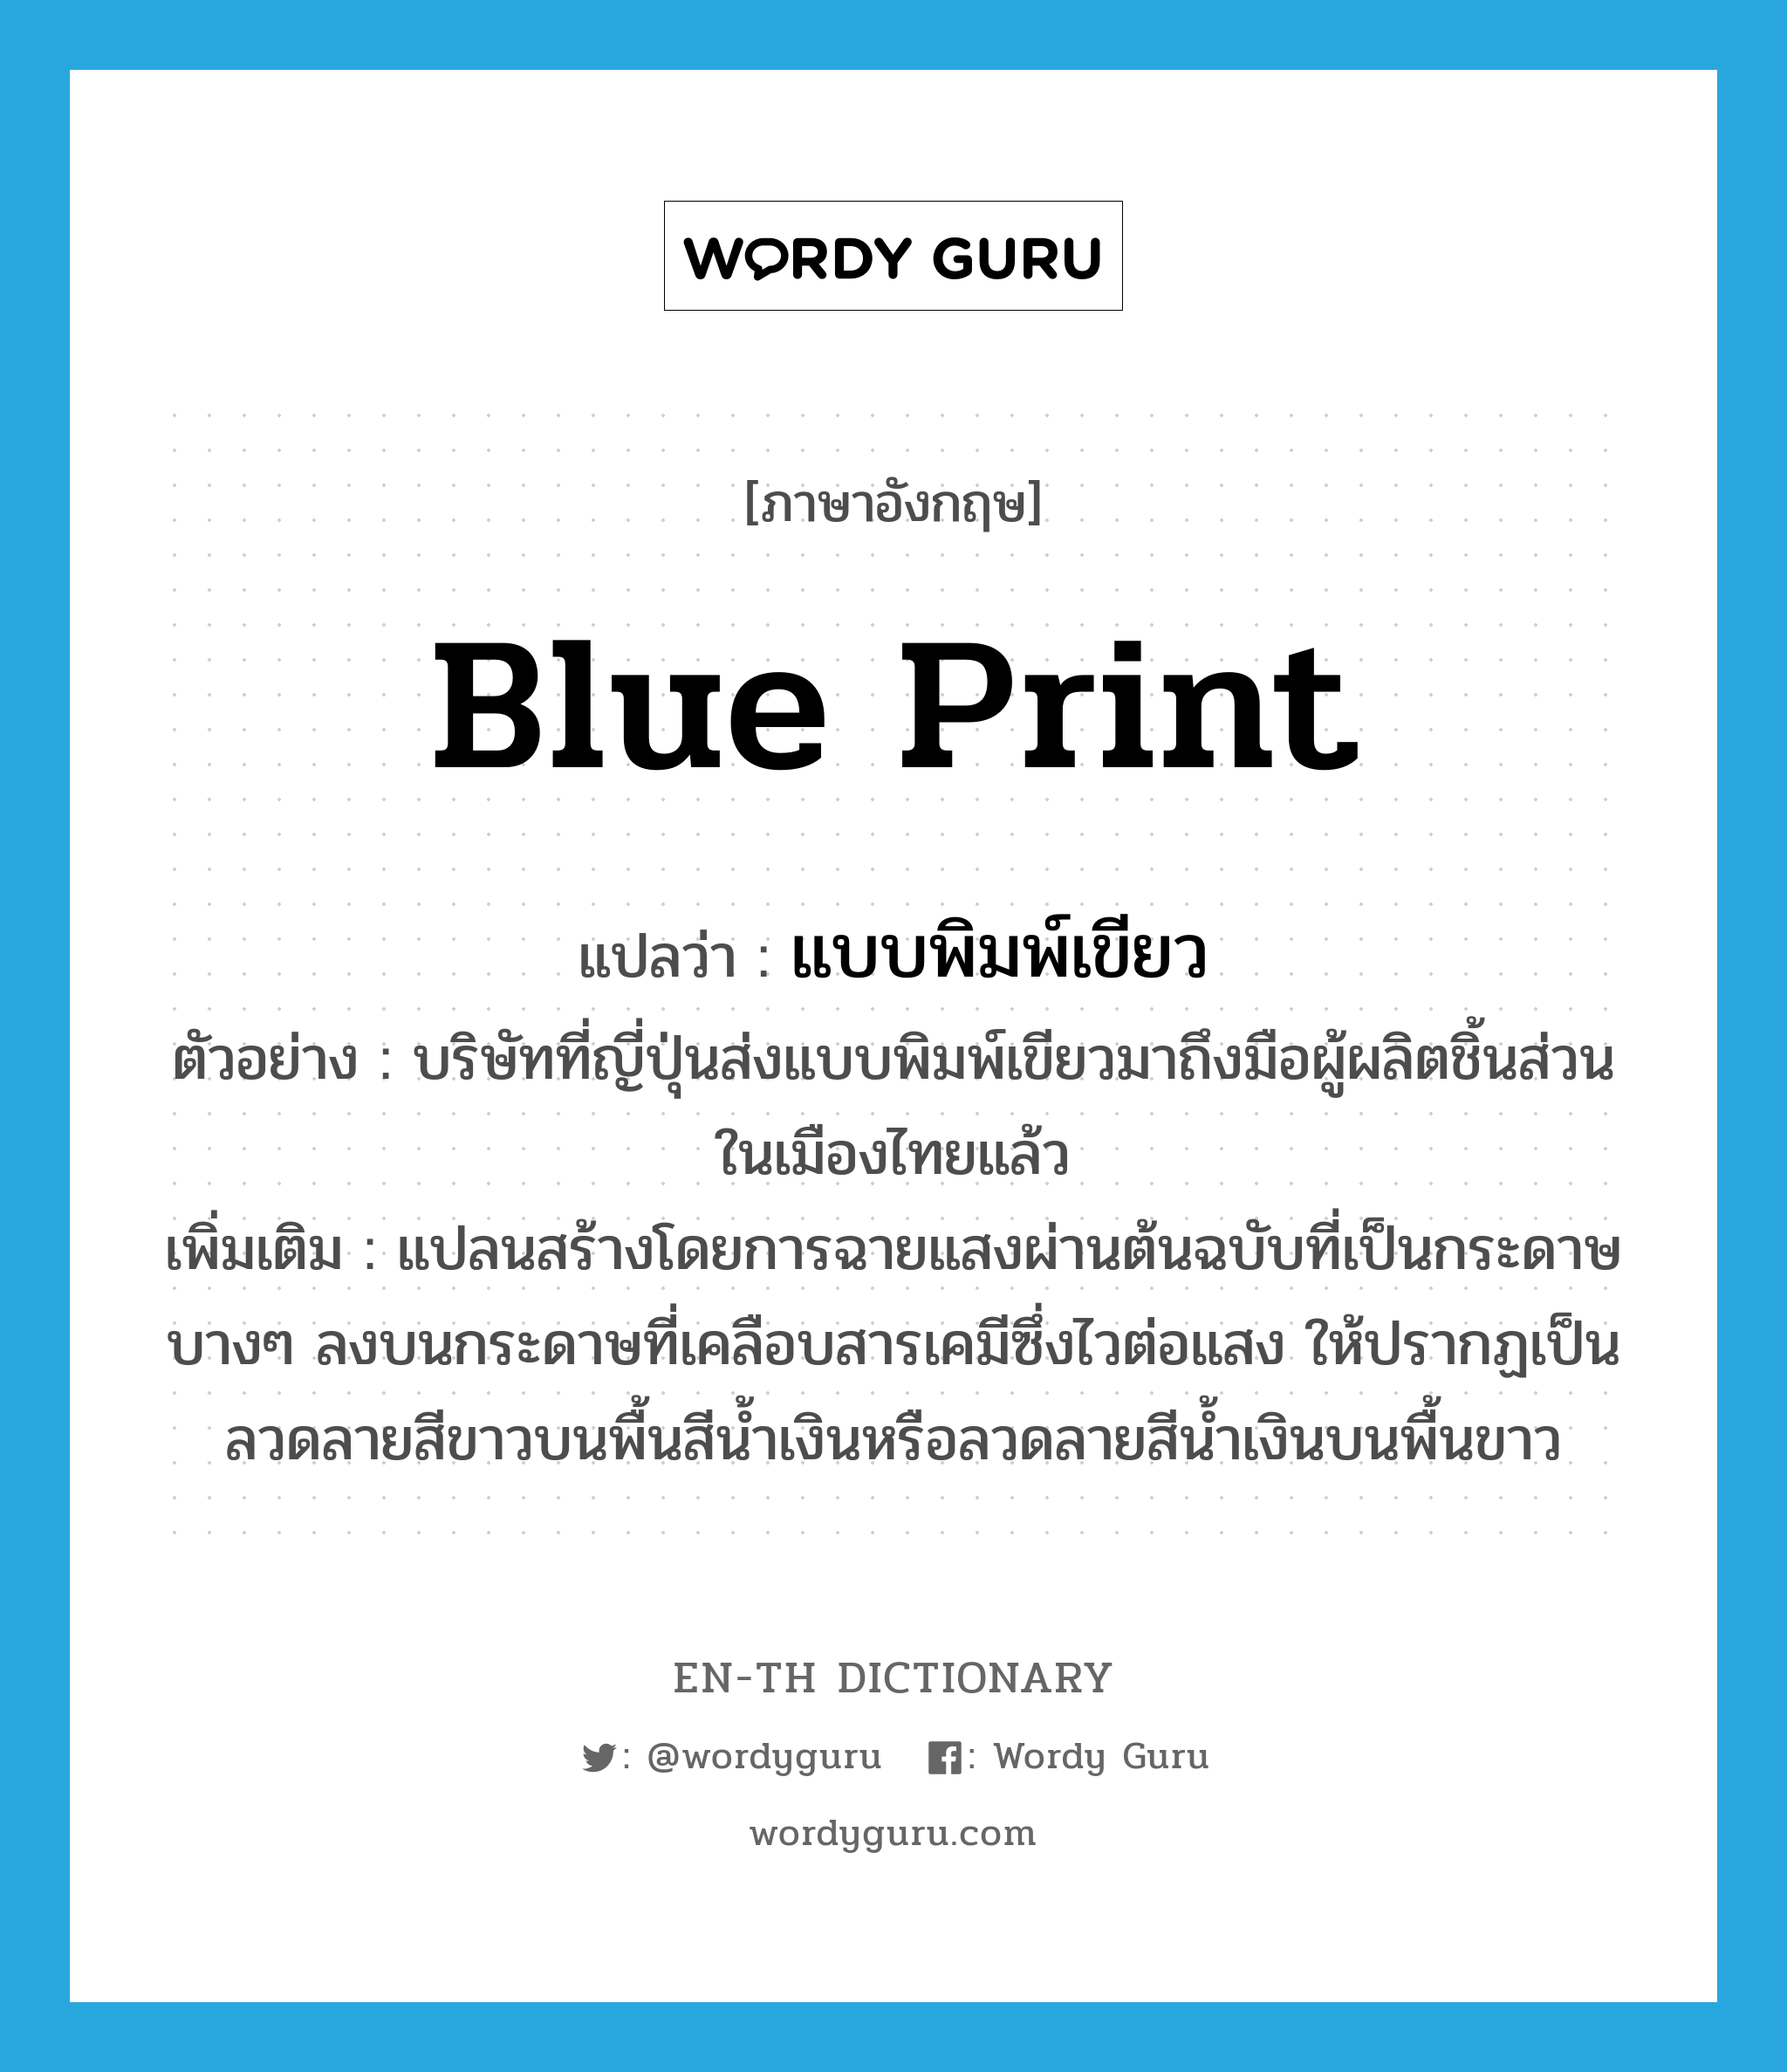 blue print แปลว่า?, คำศัพท์ภาษาอังกฤษ blue print แปลว่า แบบพิมพ์เขียว ประเภท N ตัวอย่าง บริษัทที่ญี่ปุ่นส่งแบบพิมพ์เขียวมาถึงมือผู้ผลิตชิ้นส่วนในเมืองไทยแล้ว เพิ่มเติม แปลนสร้างโดยการฉายแสงผ่านต้นฉบับที่เป็นกระดาษบางๆ ลงบนกระดาษที่เคลือบสารเคมีซึ่งไวต่อแสง ให้ปรากฏเป็นลวดลายสีขาวบนพื้นสีน้ำเงินหรือลวดลายสีน้ำเงินบนพื้นขาว หมวด N